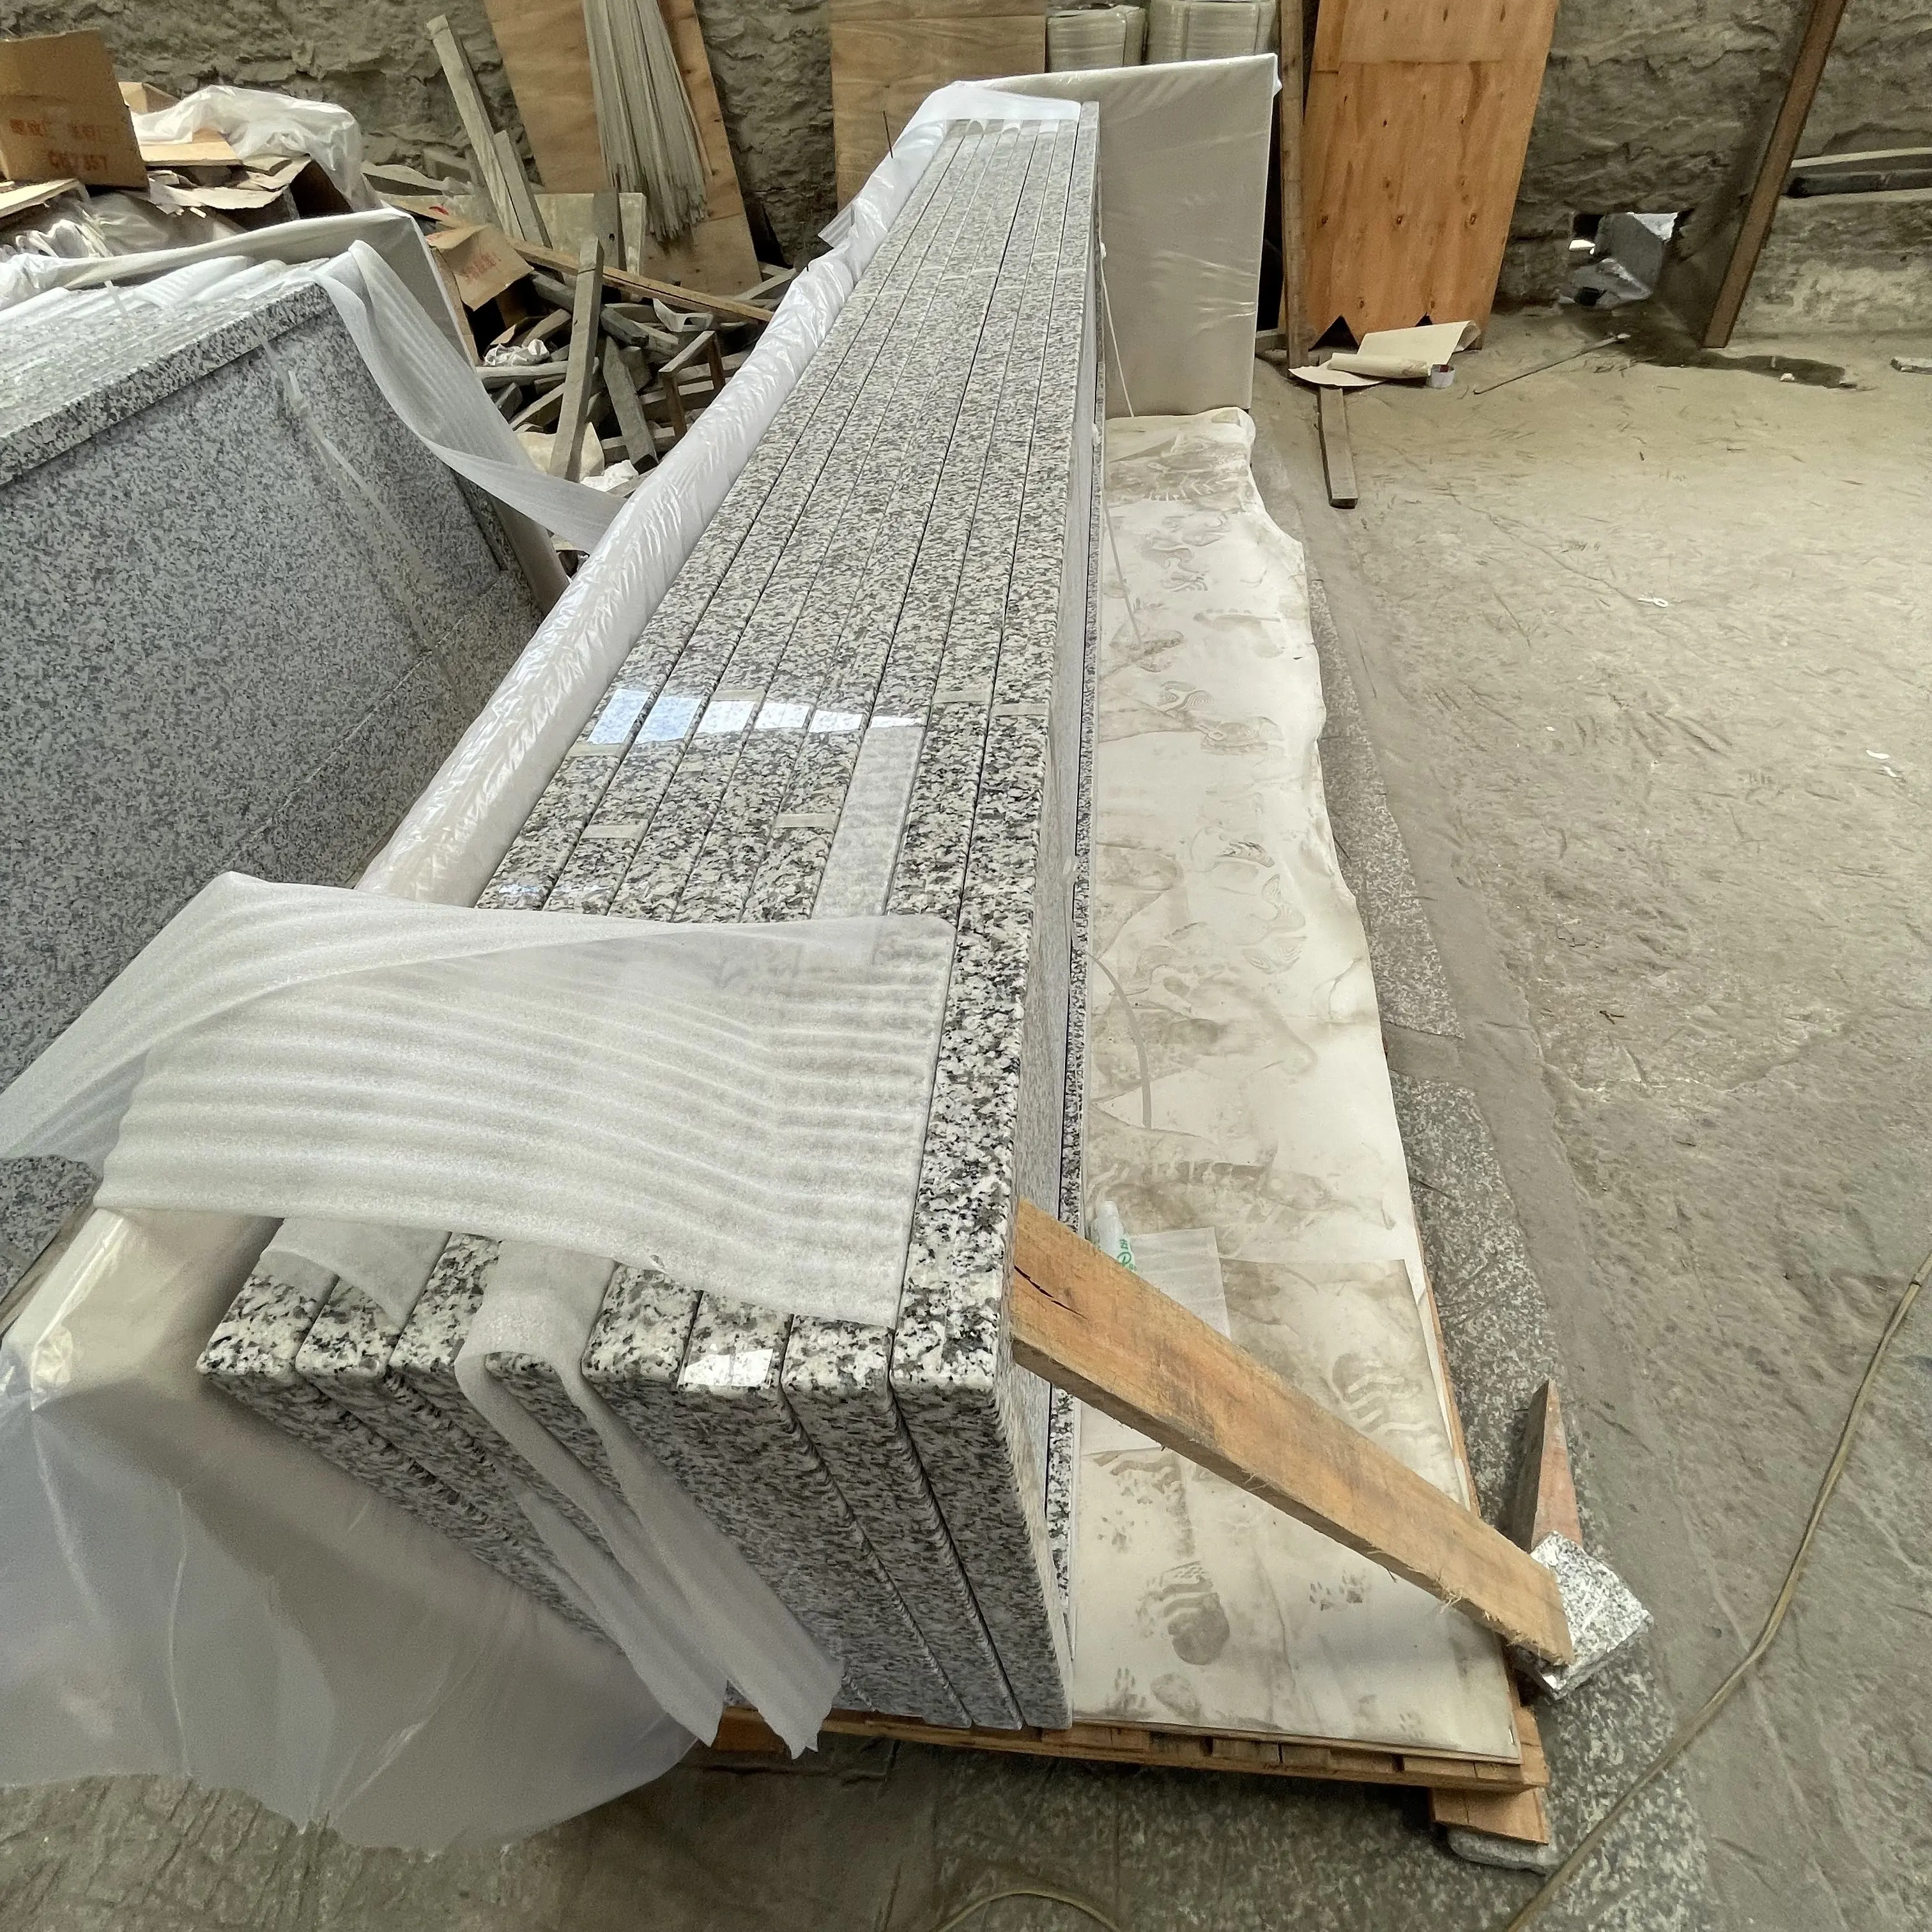 Coon granite Küchentisch Arbeits platte Variety Counter Top Schneiden auf Granit Granit Stein Top Qualität 40 Fuß Platte Weiß